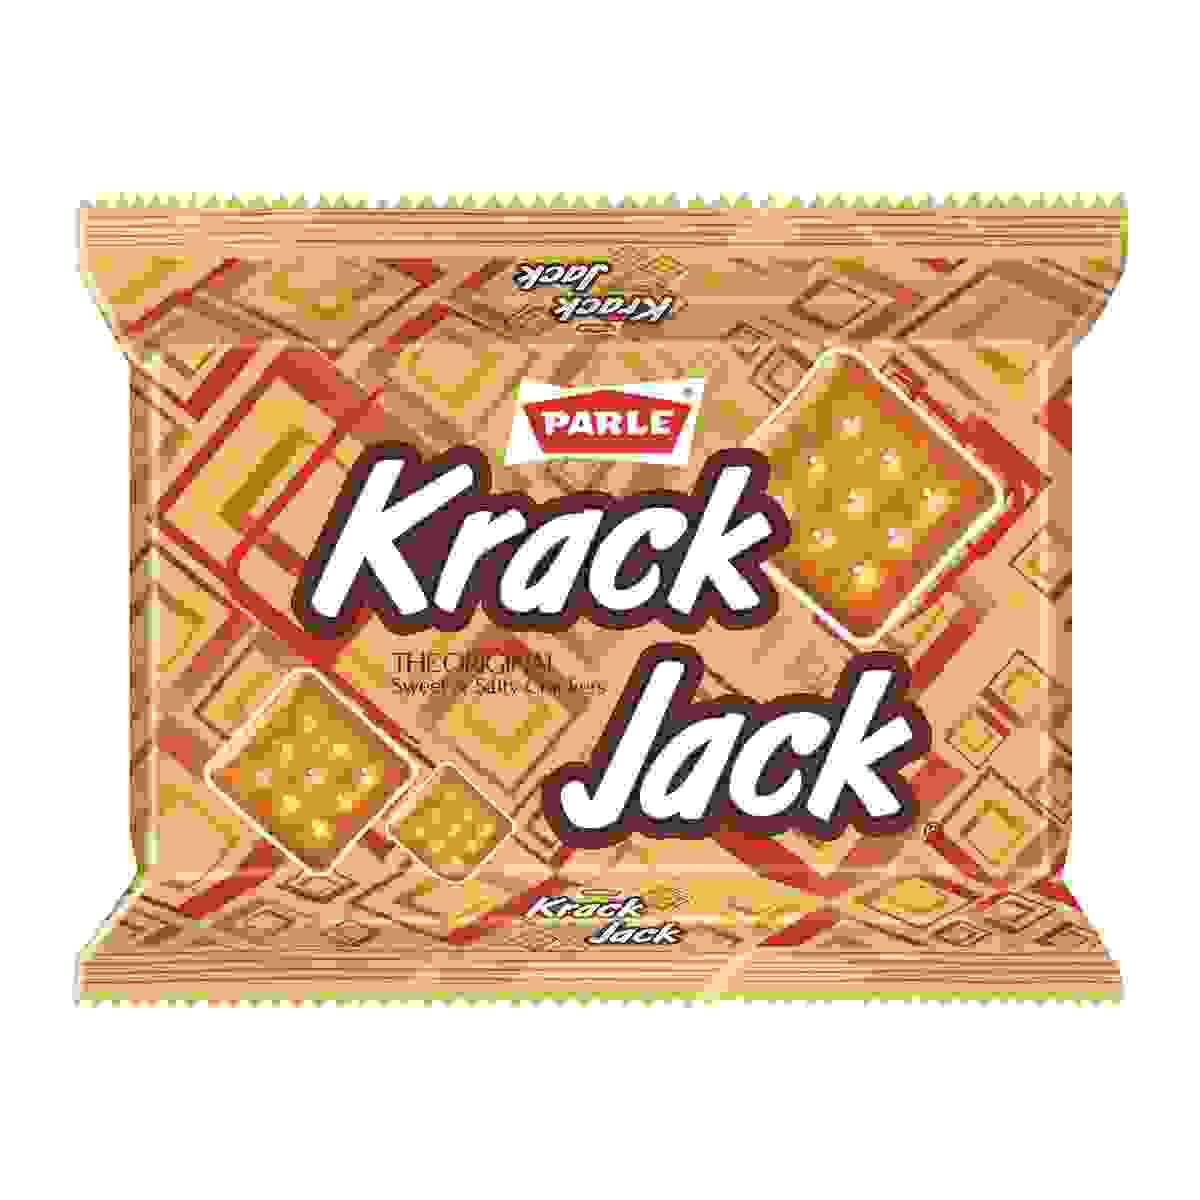 Parle Krackjack Biscuit, 200g